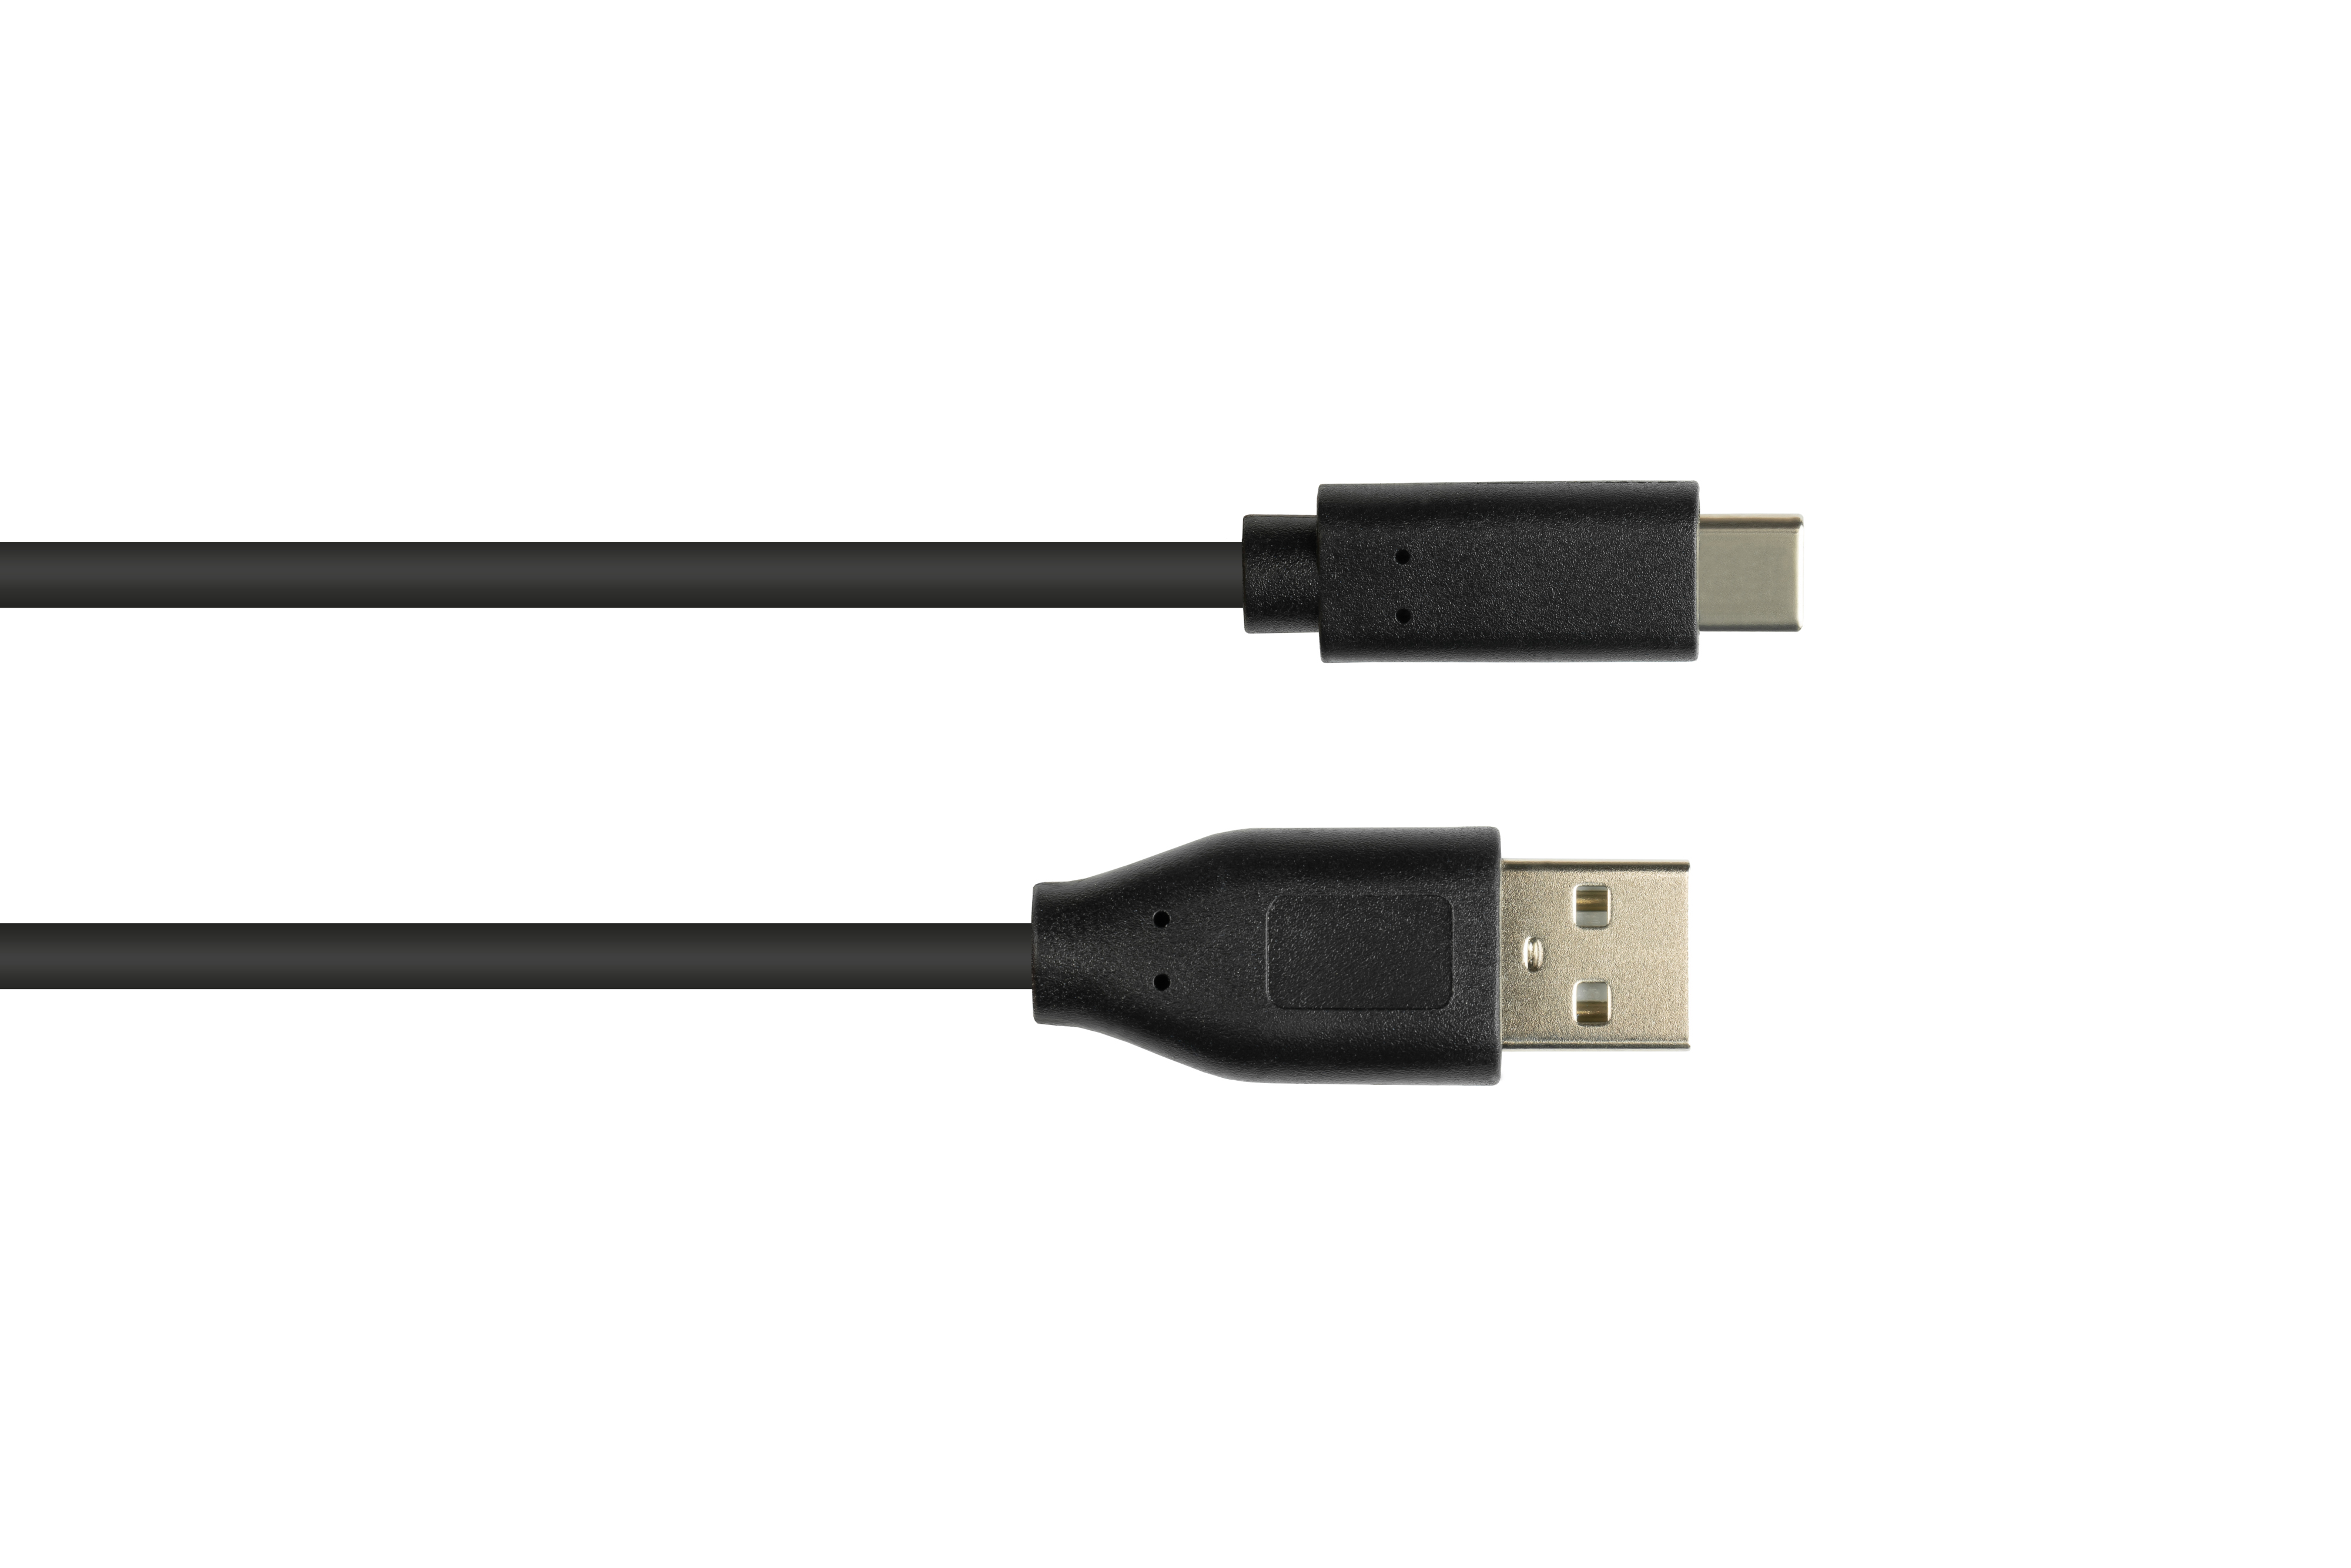 KABELMEISTER A 2.0 Anschlusskabel USB Stecker an schwarz Stecker, USB-C™ CU,